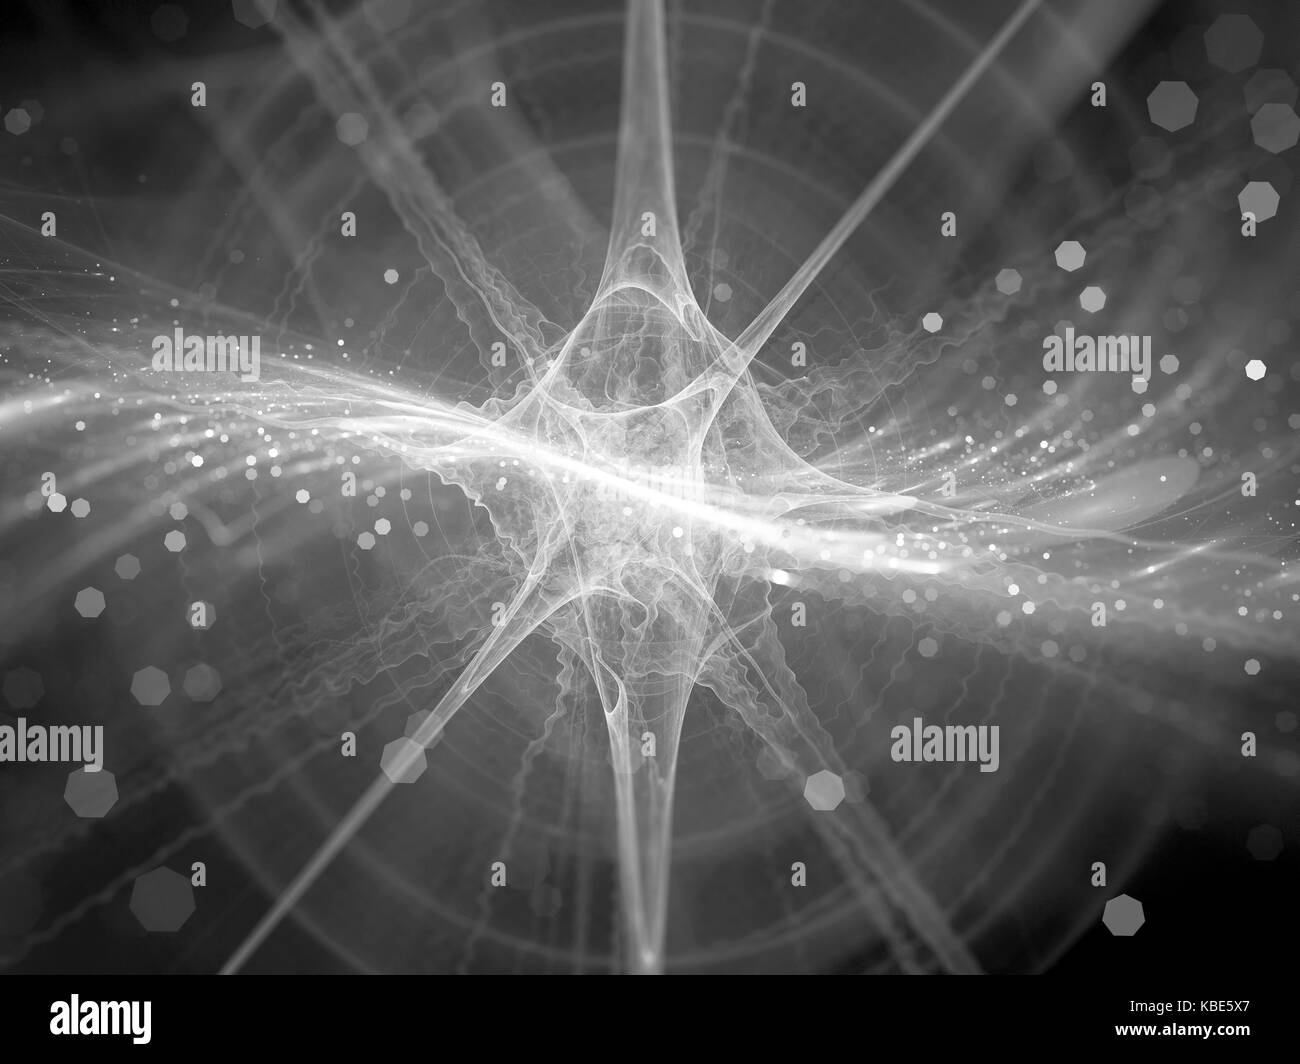 Gamma ray Burst im Raum schwarze und weiße Textur, Gravitationswellen Quelle im Raum, Computer abstrakten Hintergrund erzeugt, 3D-Rendering Stockfoto